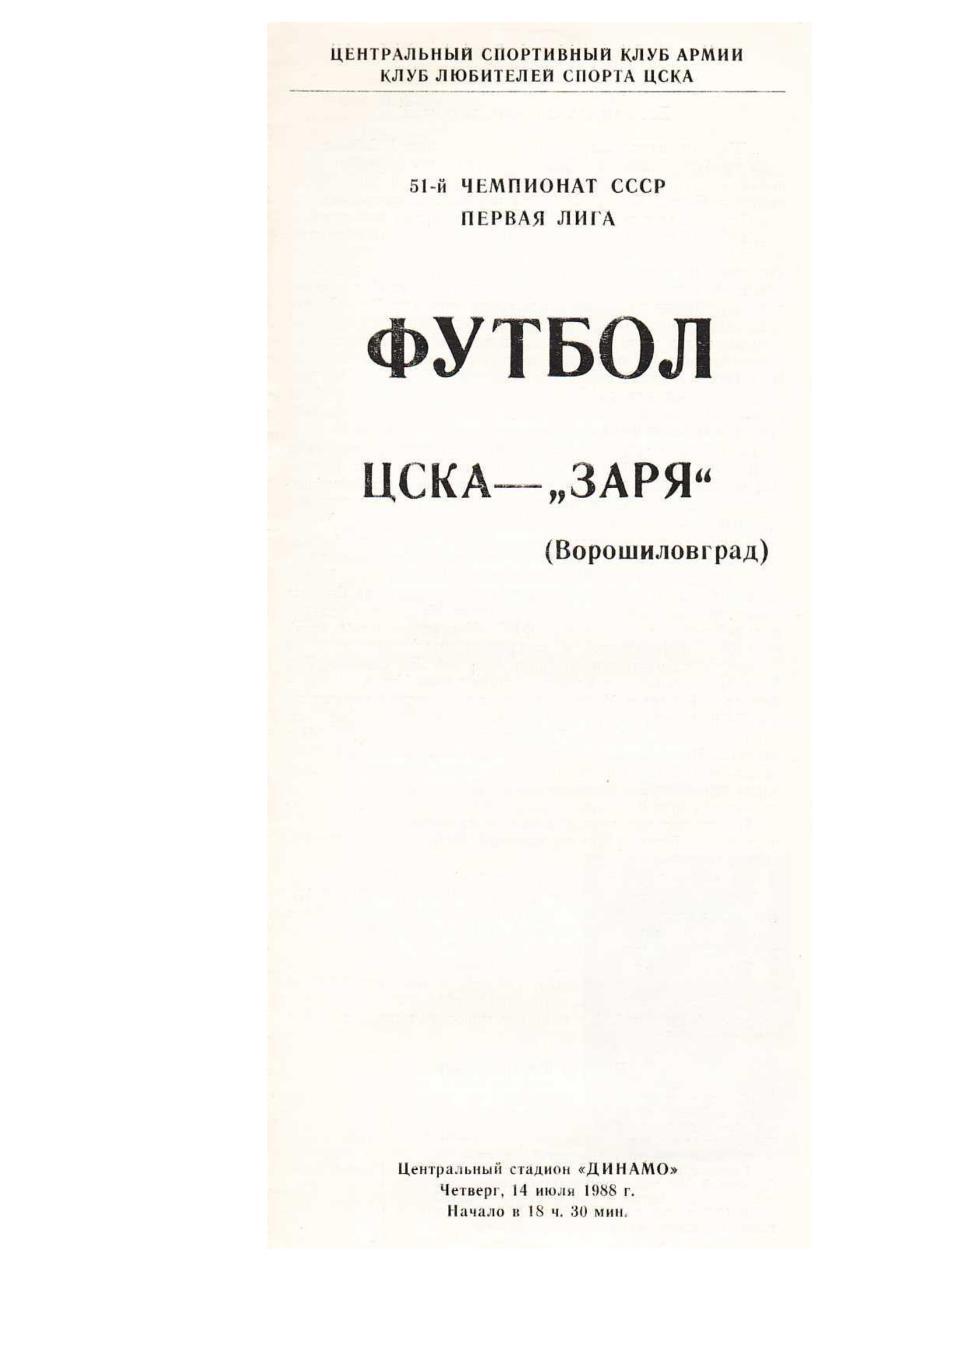 Футбол. 14.07. 1988 г. ЦСКА (Москва) – Заря (Ворошиловград). Чемпионат СССР.